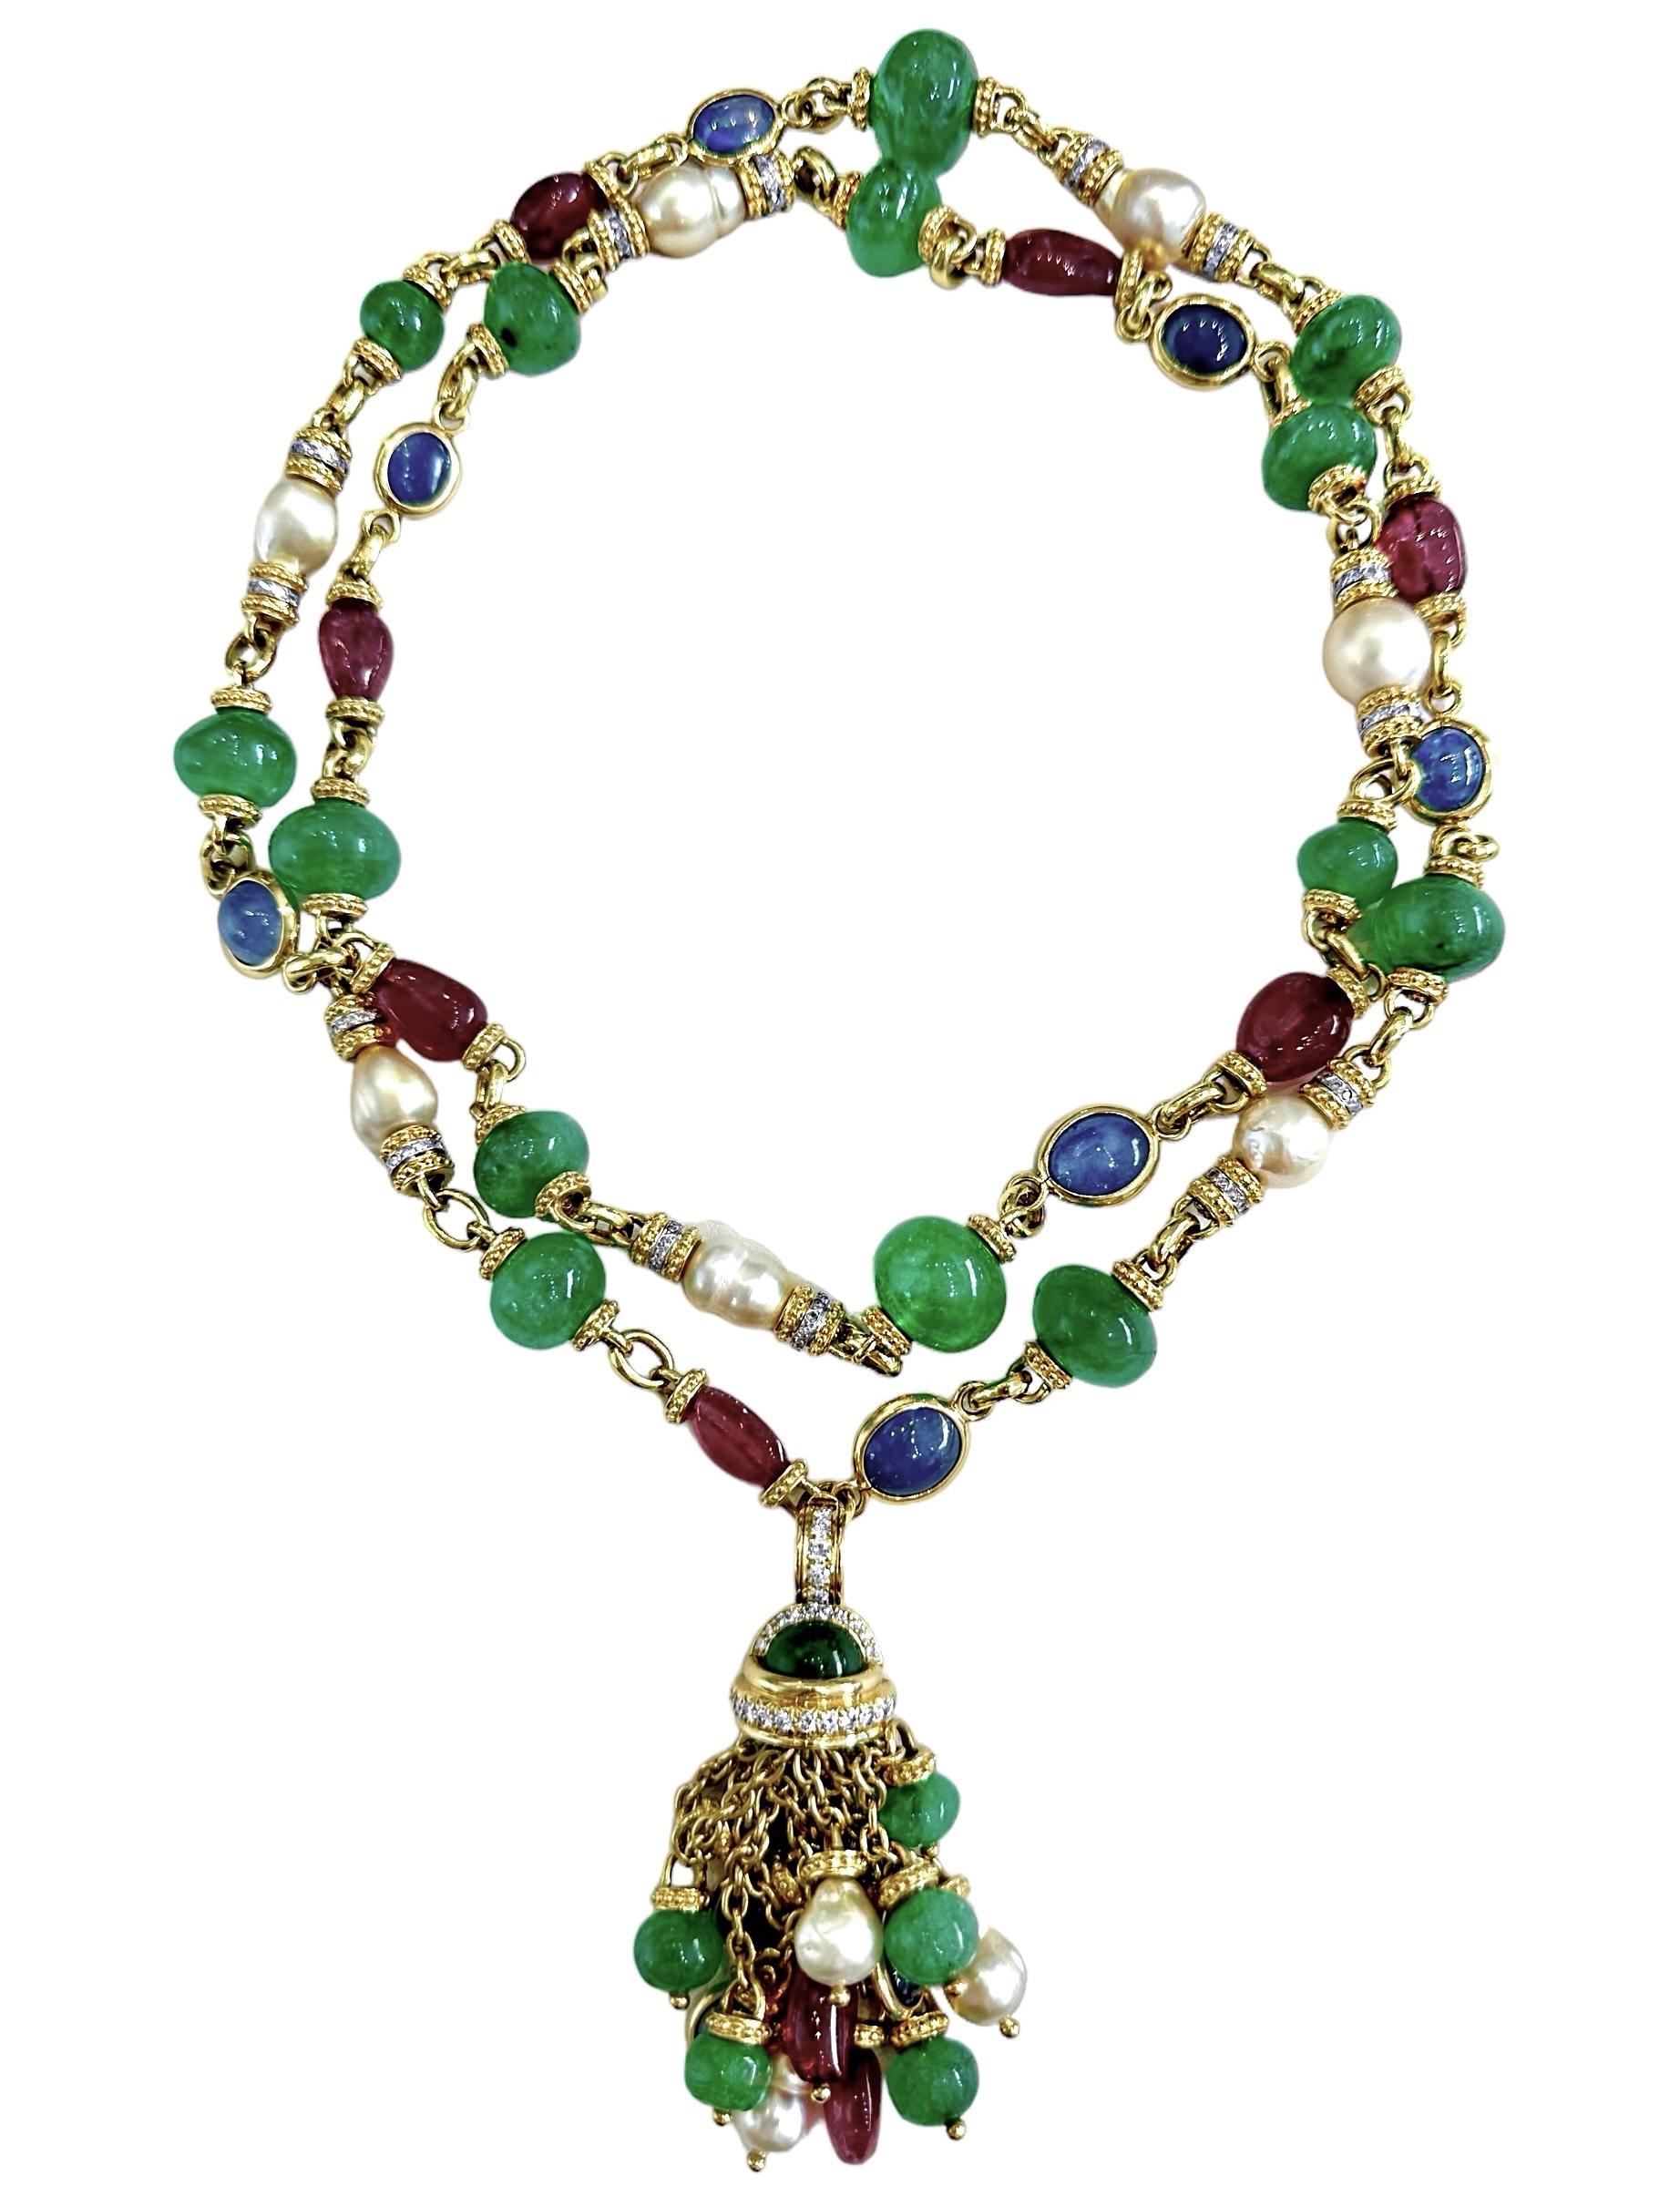 Diese opulente Vintage-Halskette aus 18 Karat Gelbgold des Designers Tambetti ist mit insgesamt achtundvierzig großen und kühnen Rubin-, Smaragd- und Saphir-Cabochons sowie mit Dutzenden funkelnder Diamanten und großen Perlen besetzt. Die Halskette